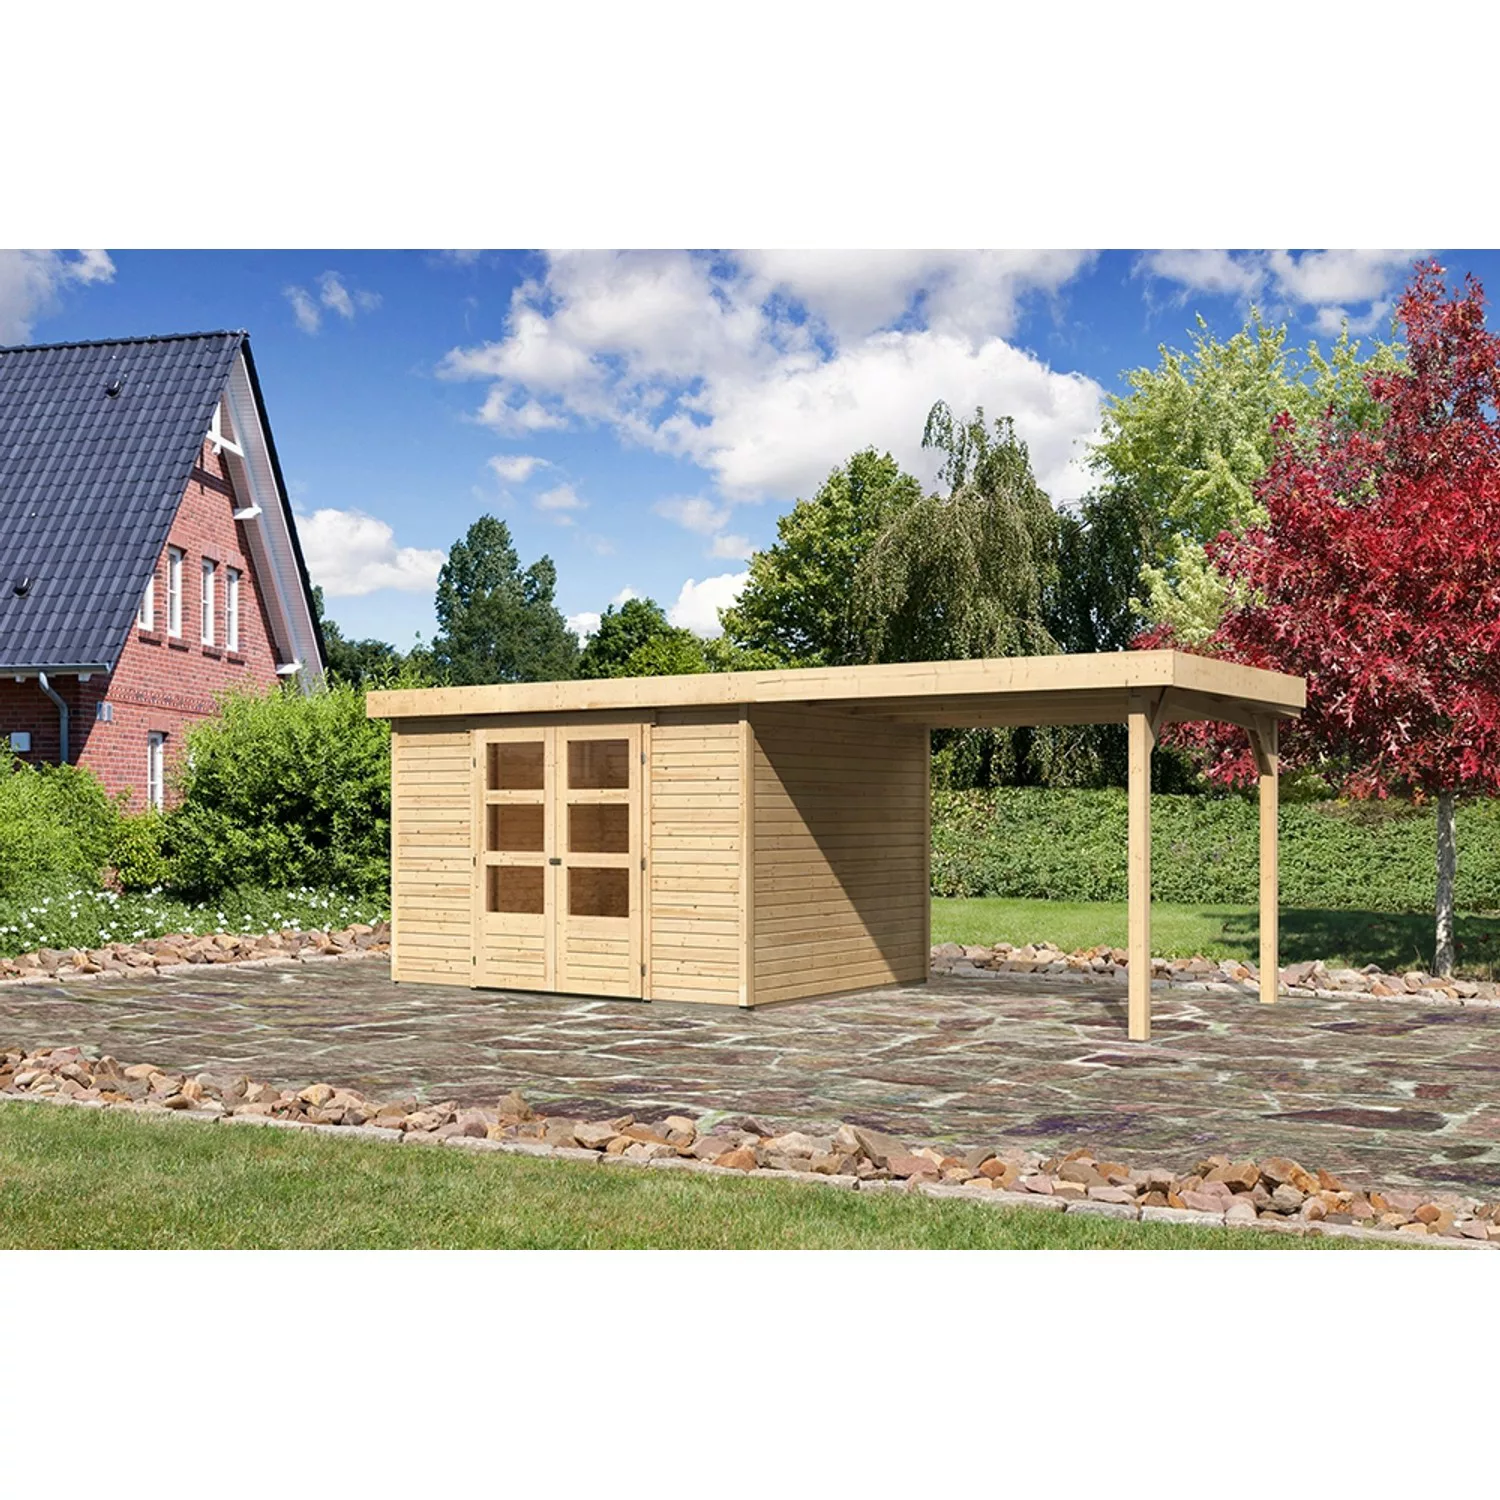 Karibu Holz-Gartenhaus Boras Natur Flachdach Unbehandelt 298 cm x 242 cm günstig online kaufen